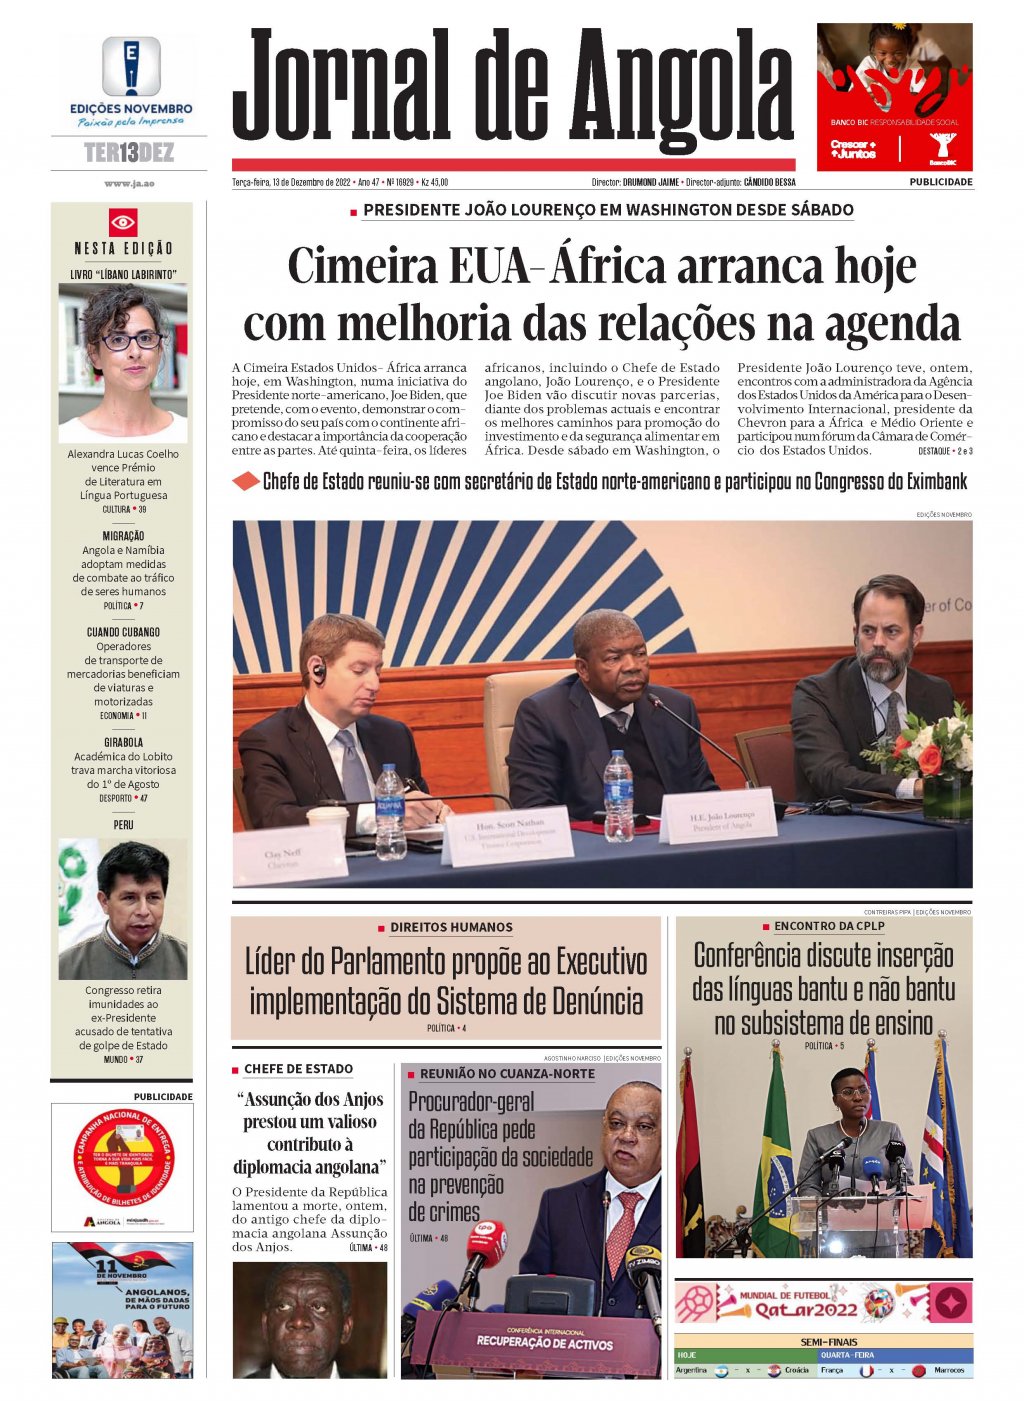 Jornal de Angola - Notícias - Xadrez: Equipas confirmam presenças